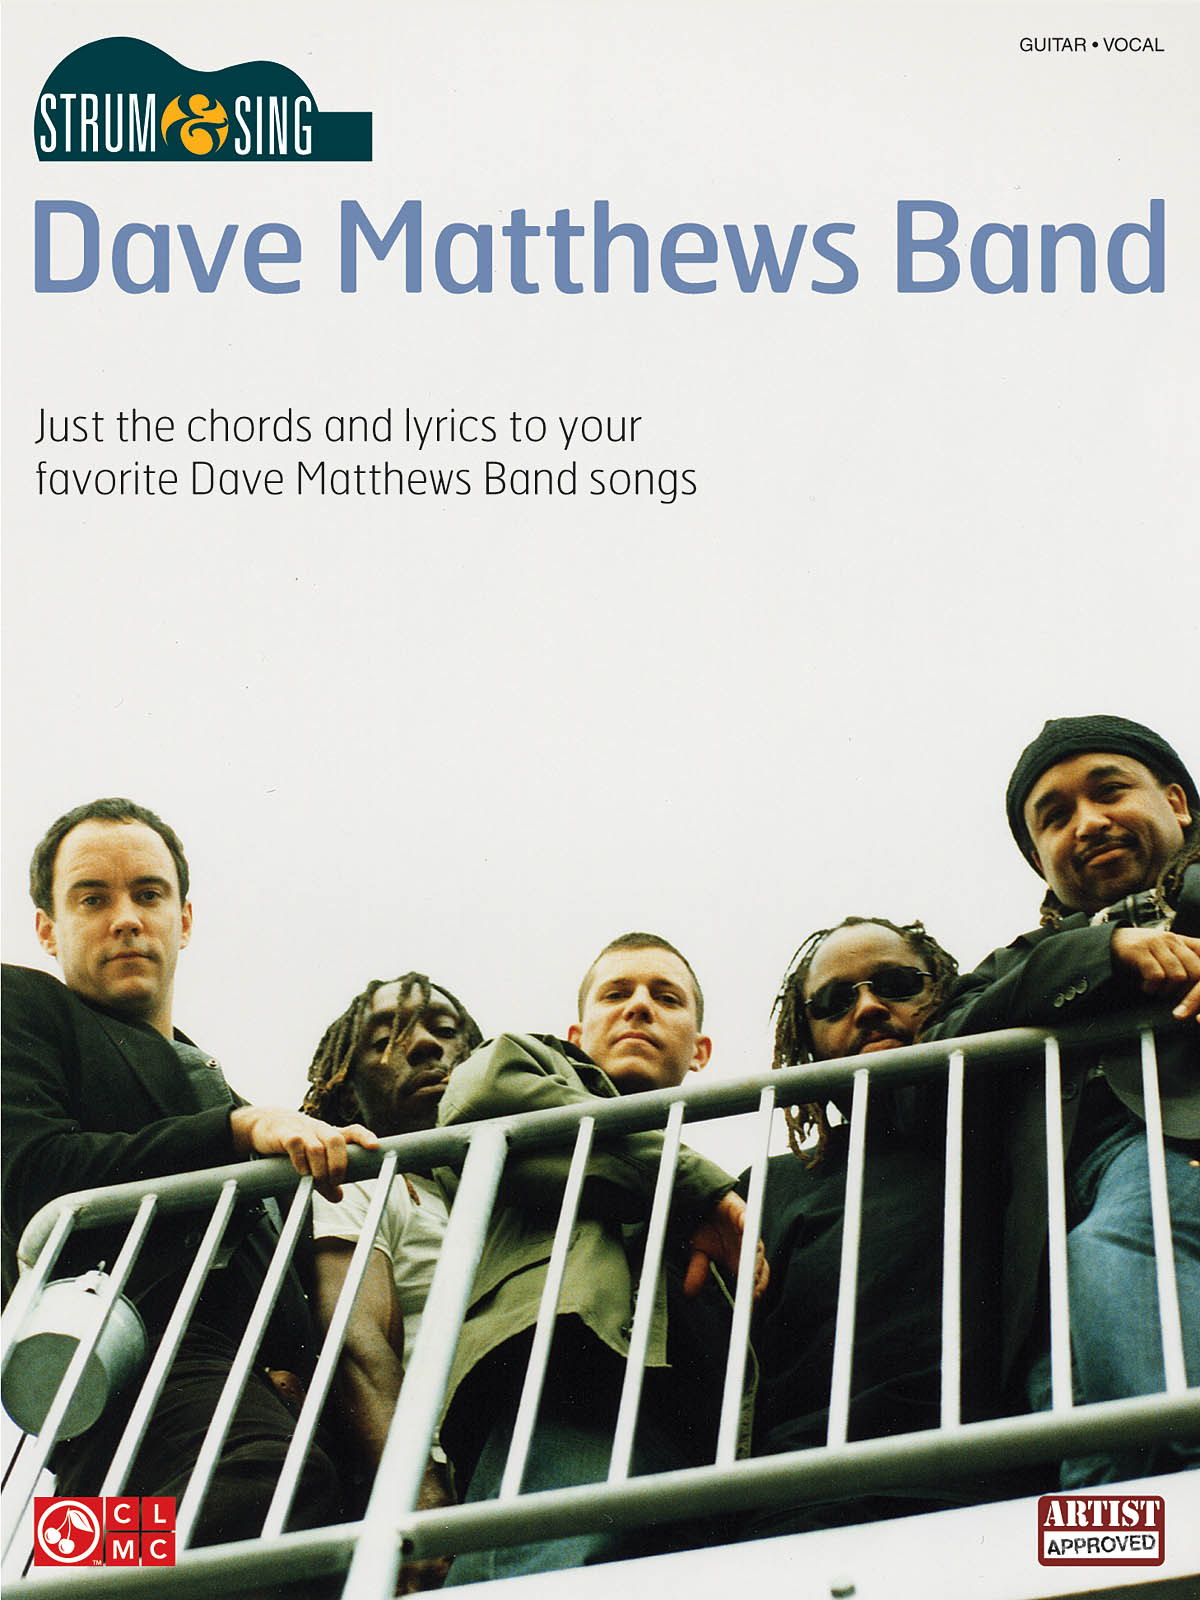 Dave Matthews Band Strum & Sing Gtr